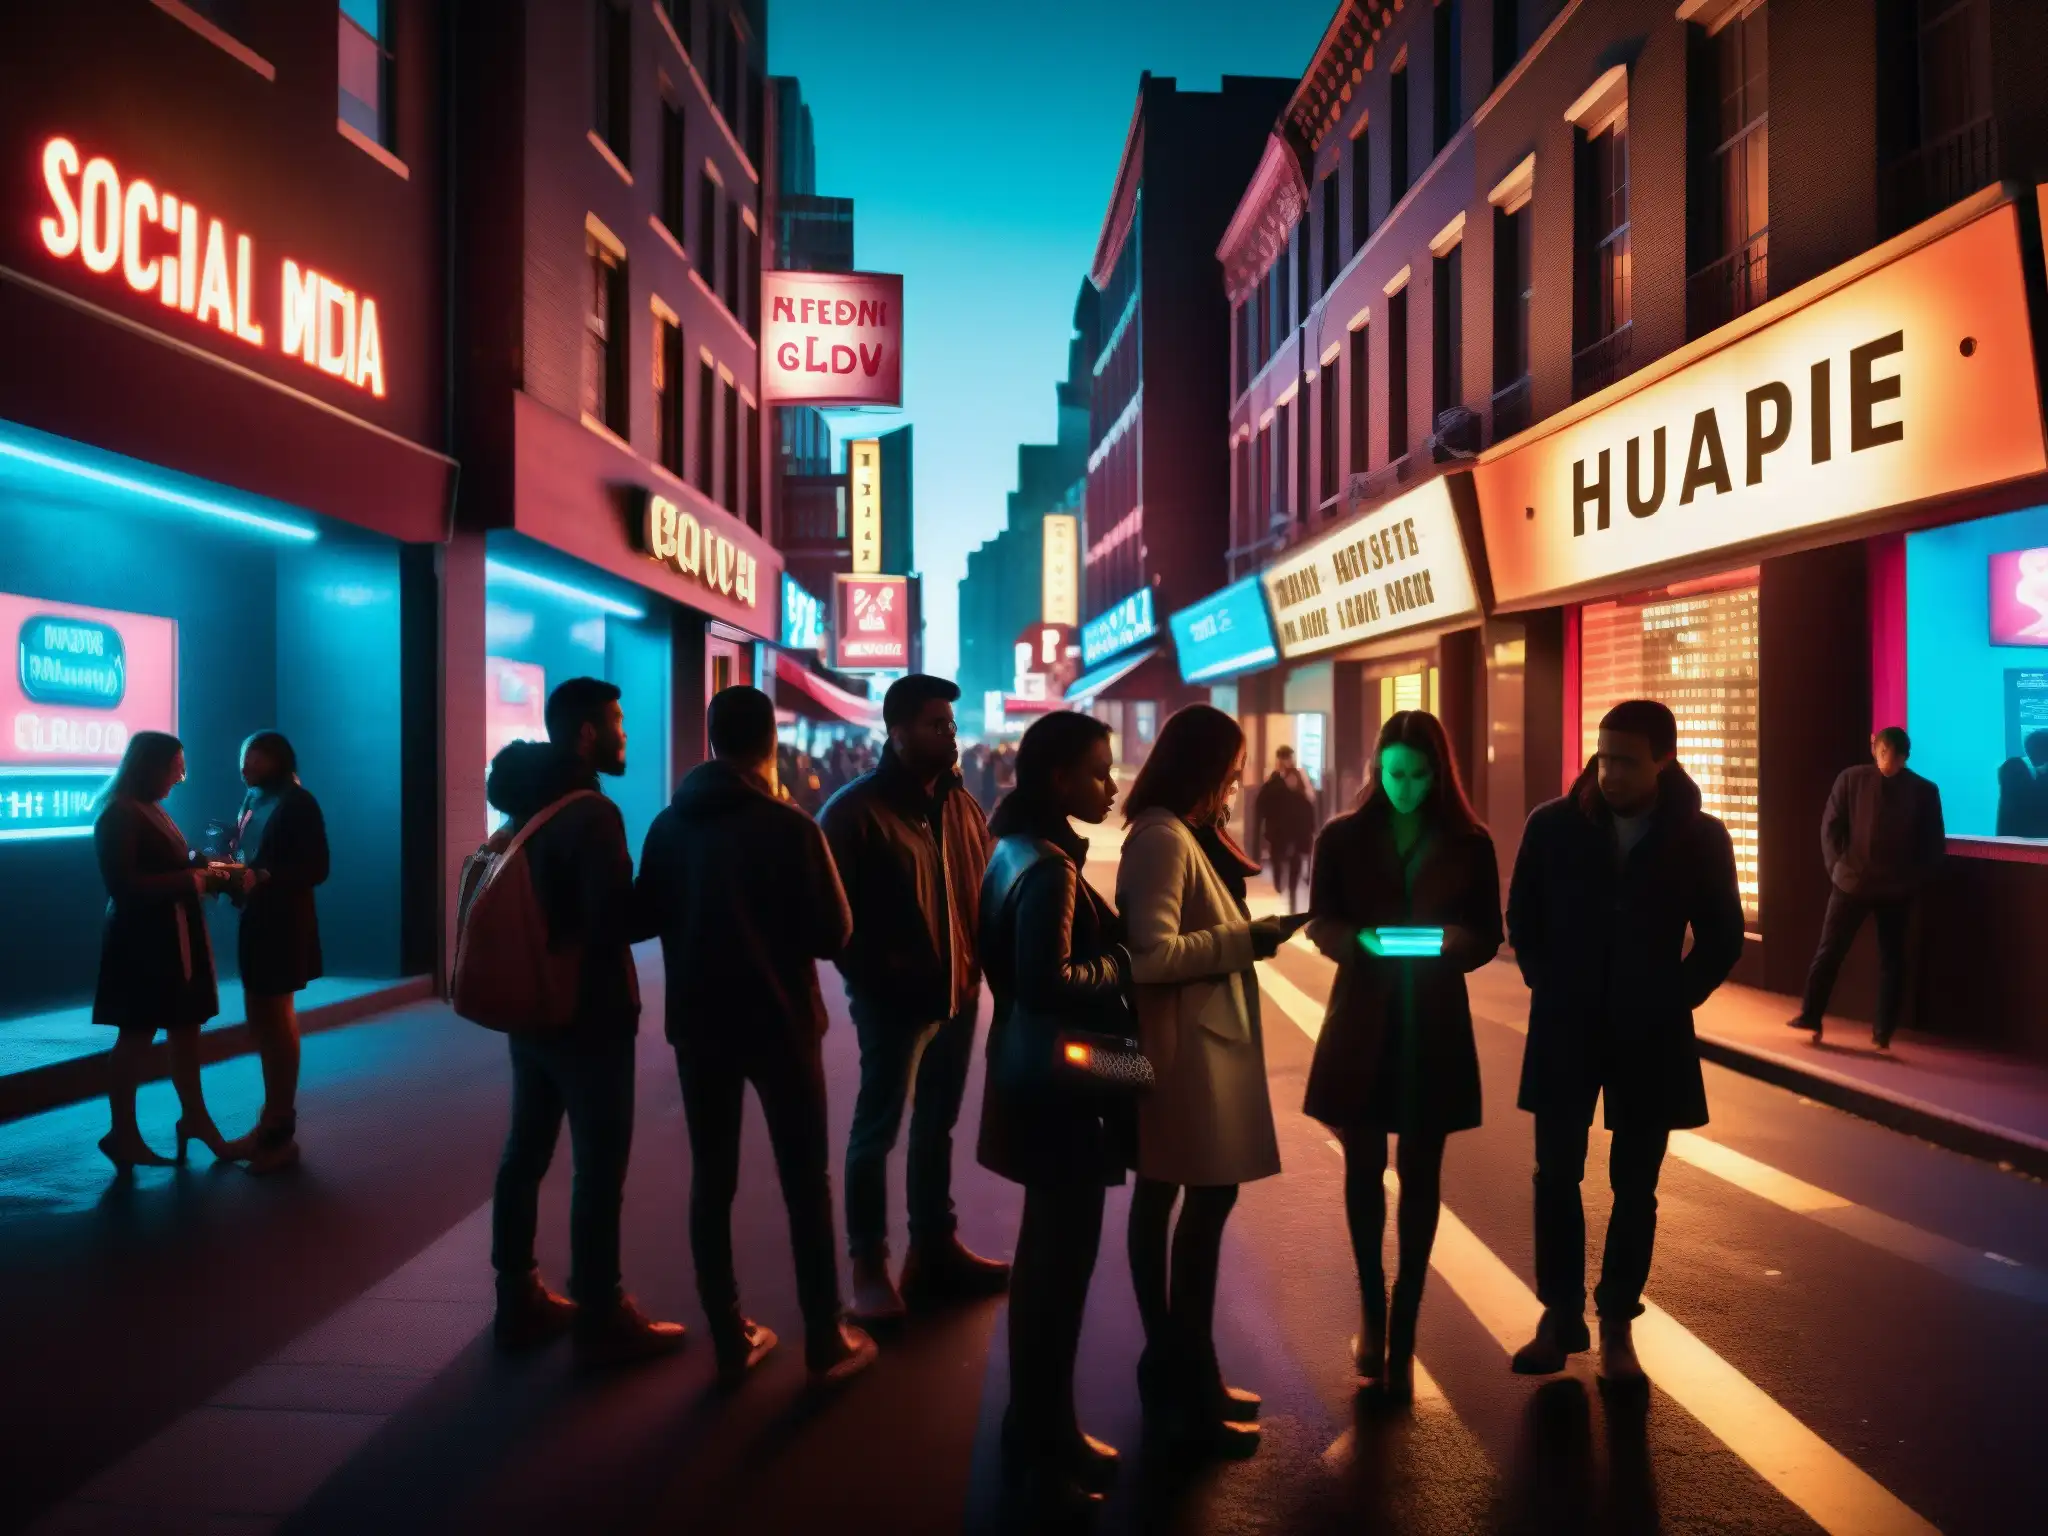 En la oscuridad de la ciudad, siluetas se reúnen bajo luces de neón, revelando el impacto de las redes sociales en las leyendas urbanas